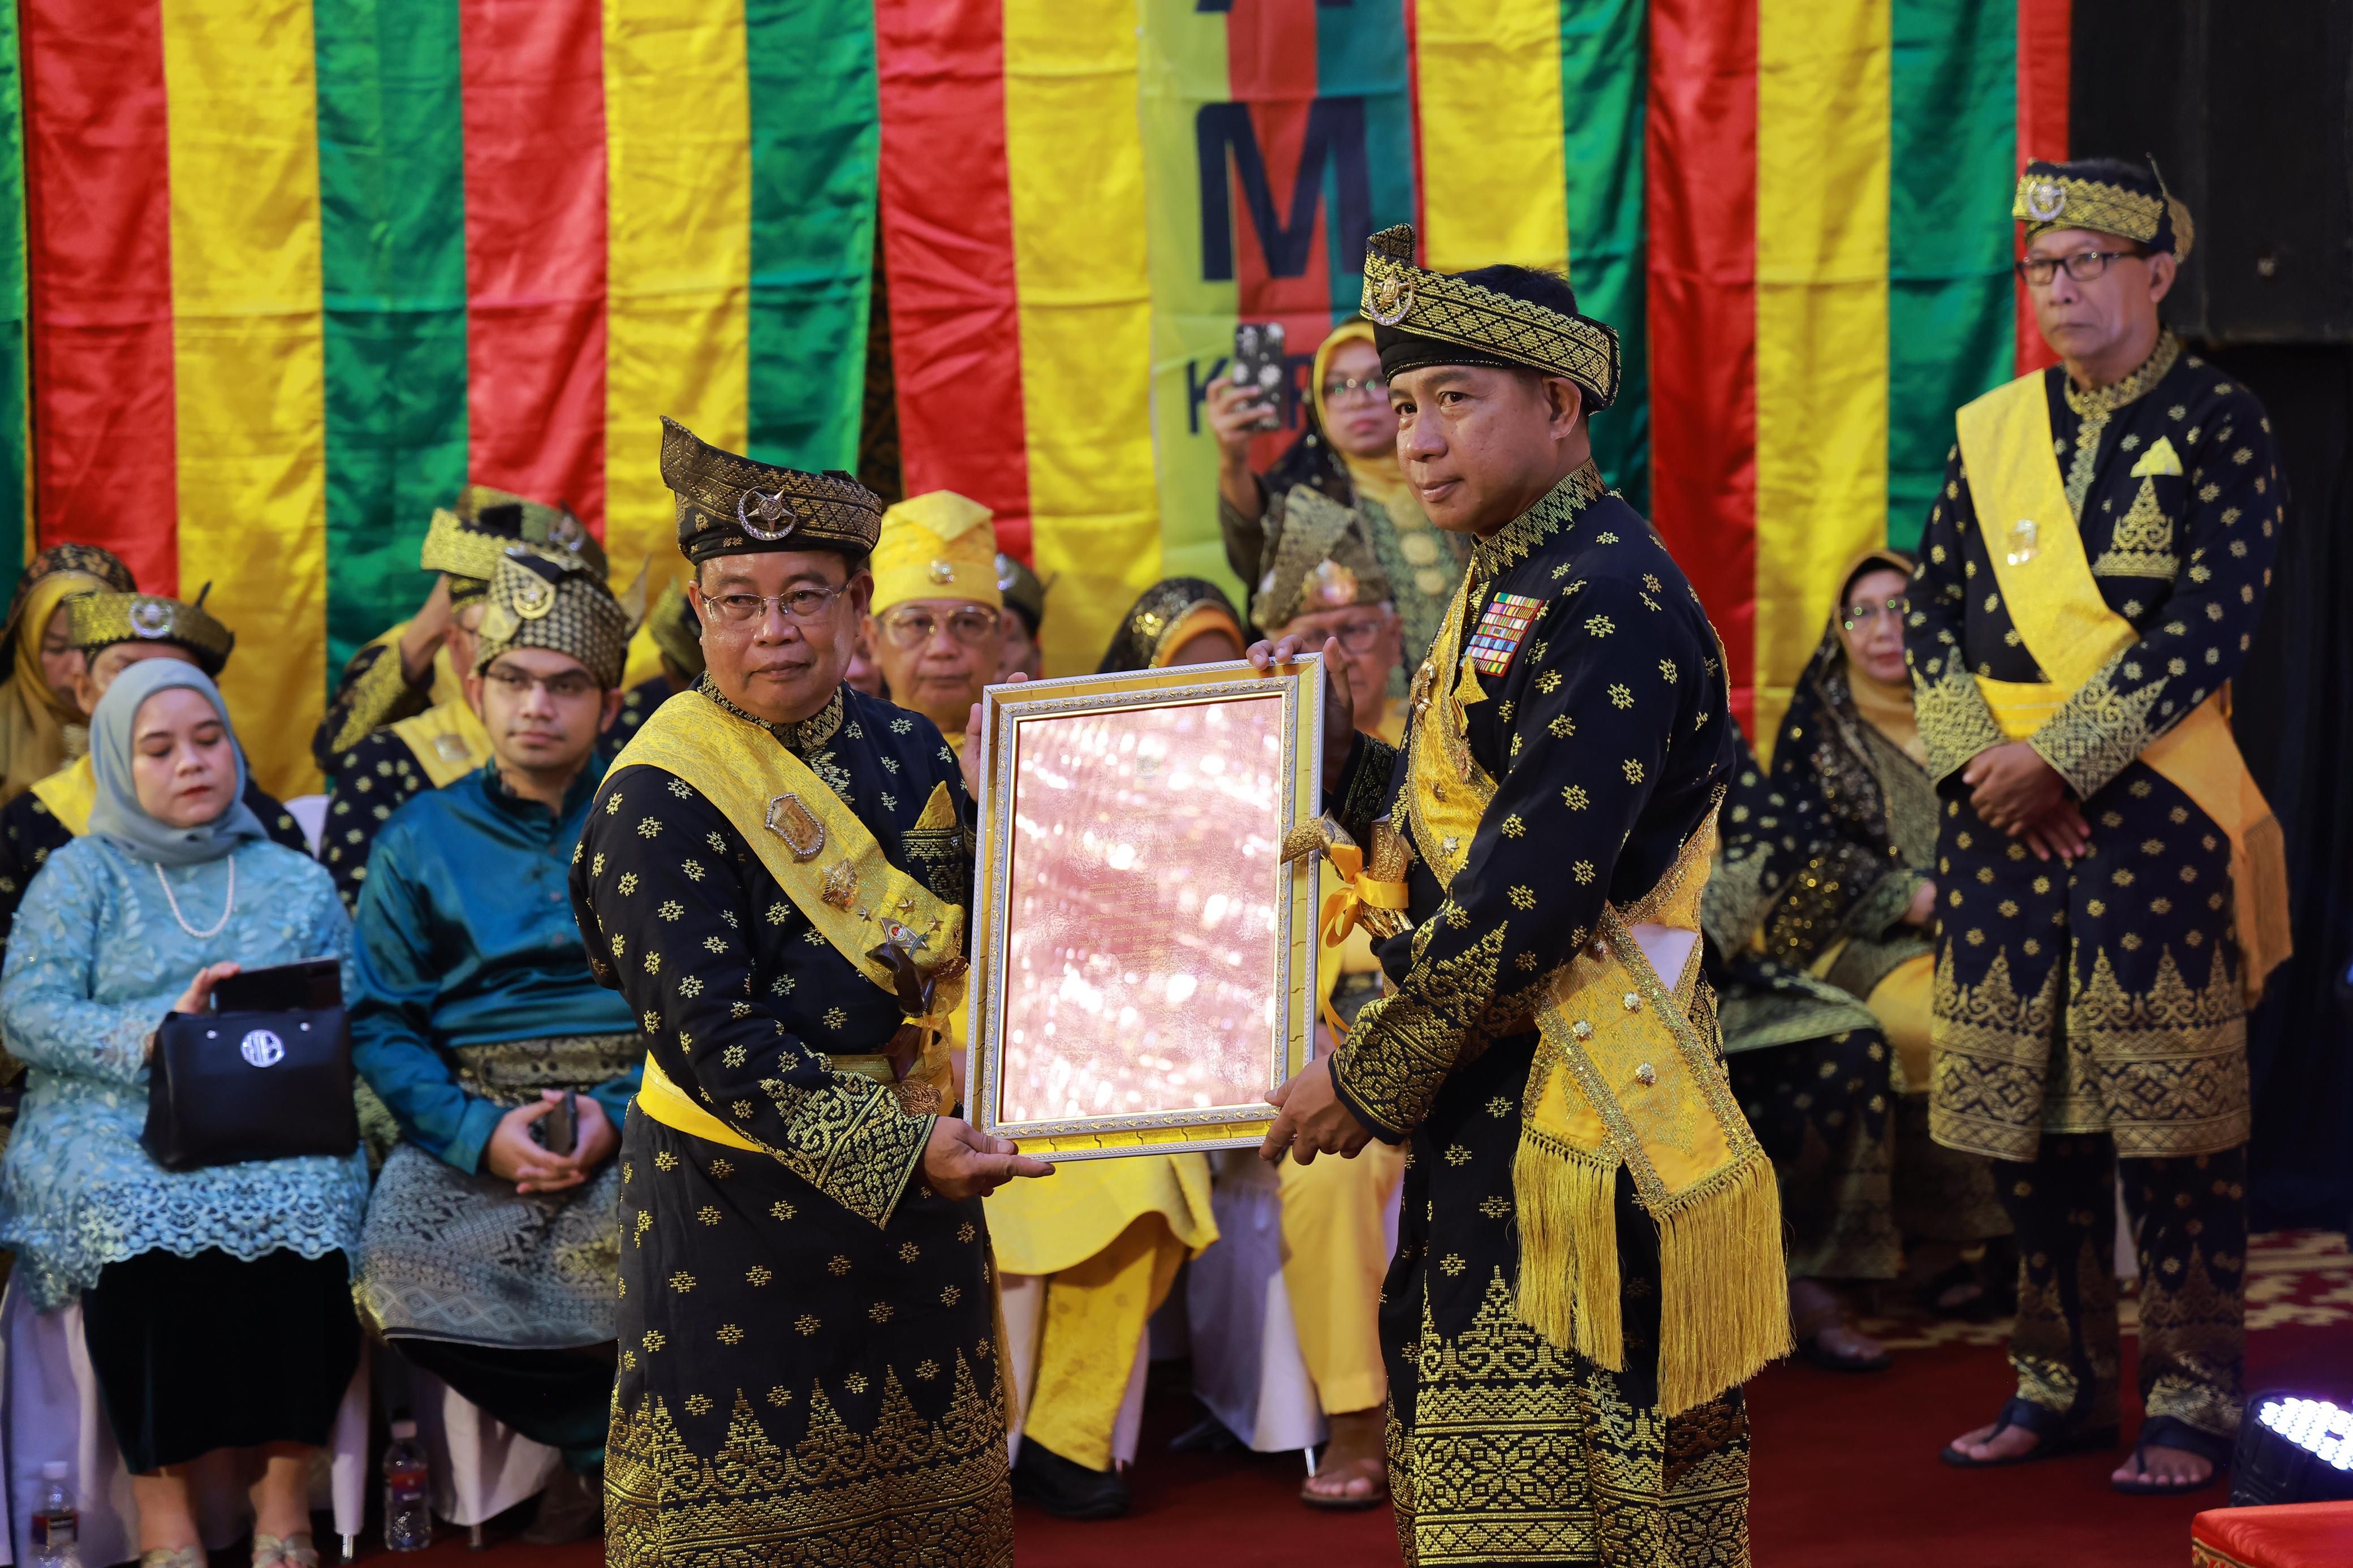 Panglima TNI Jenderal TNI Agus Subiyanto resmi menyandang gelar adat Dato' Seri Satria Bijaya Negara dari Lembaga Adat Melayu (LAM) dalam Majelis Adat Penganugerahan Gelar Adat yang digelar di Gedung Daerah, Tanjungpinang